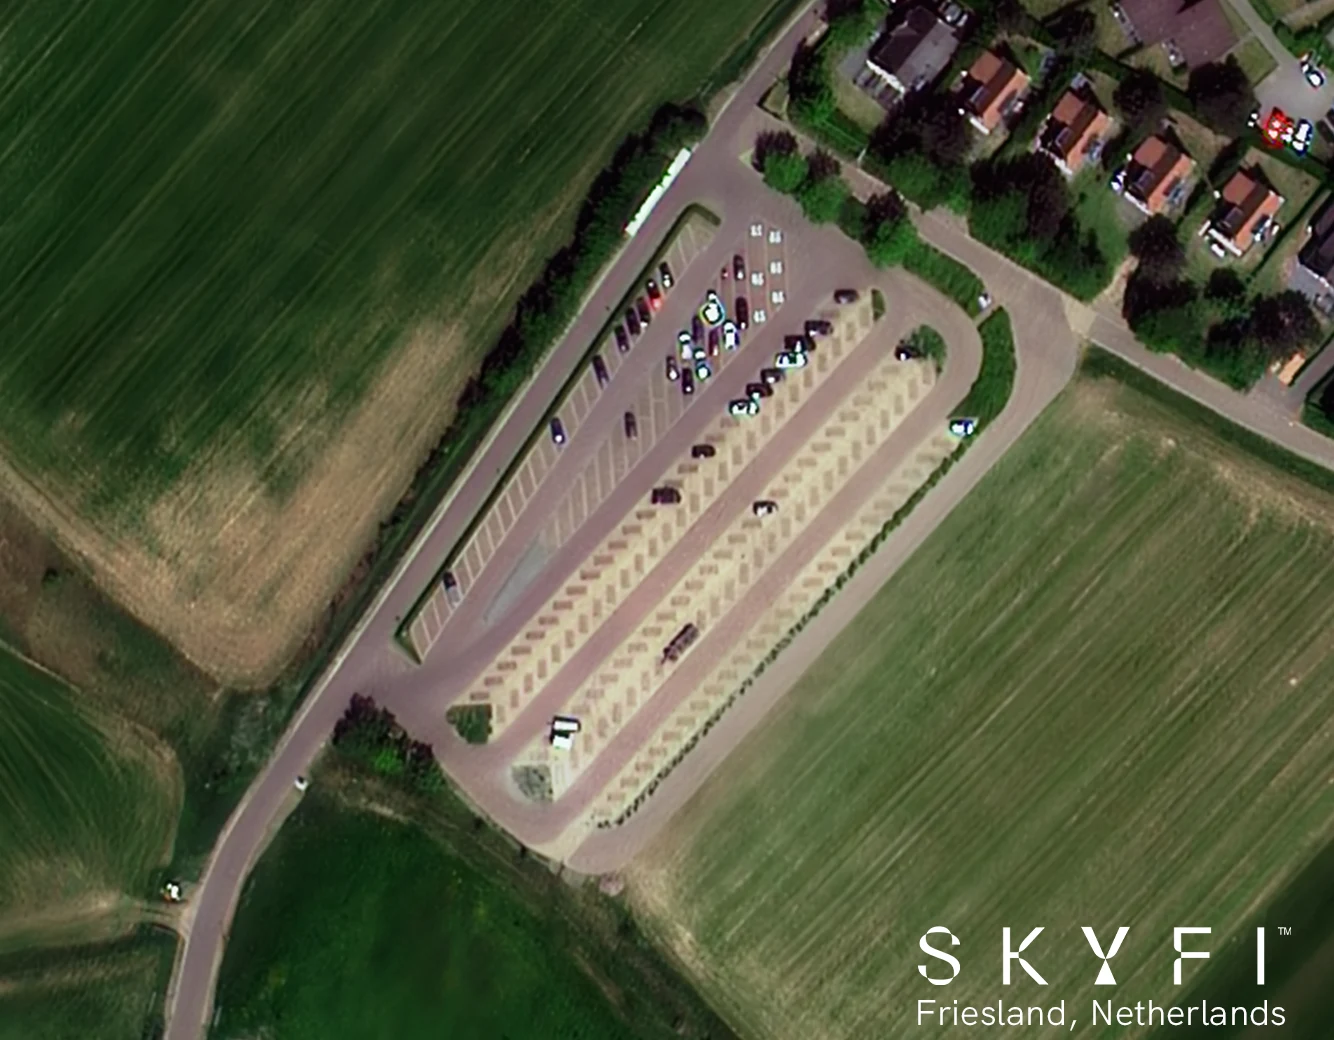 30 cm Image of a Parking Lot In Friesland, Netherlands